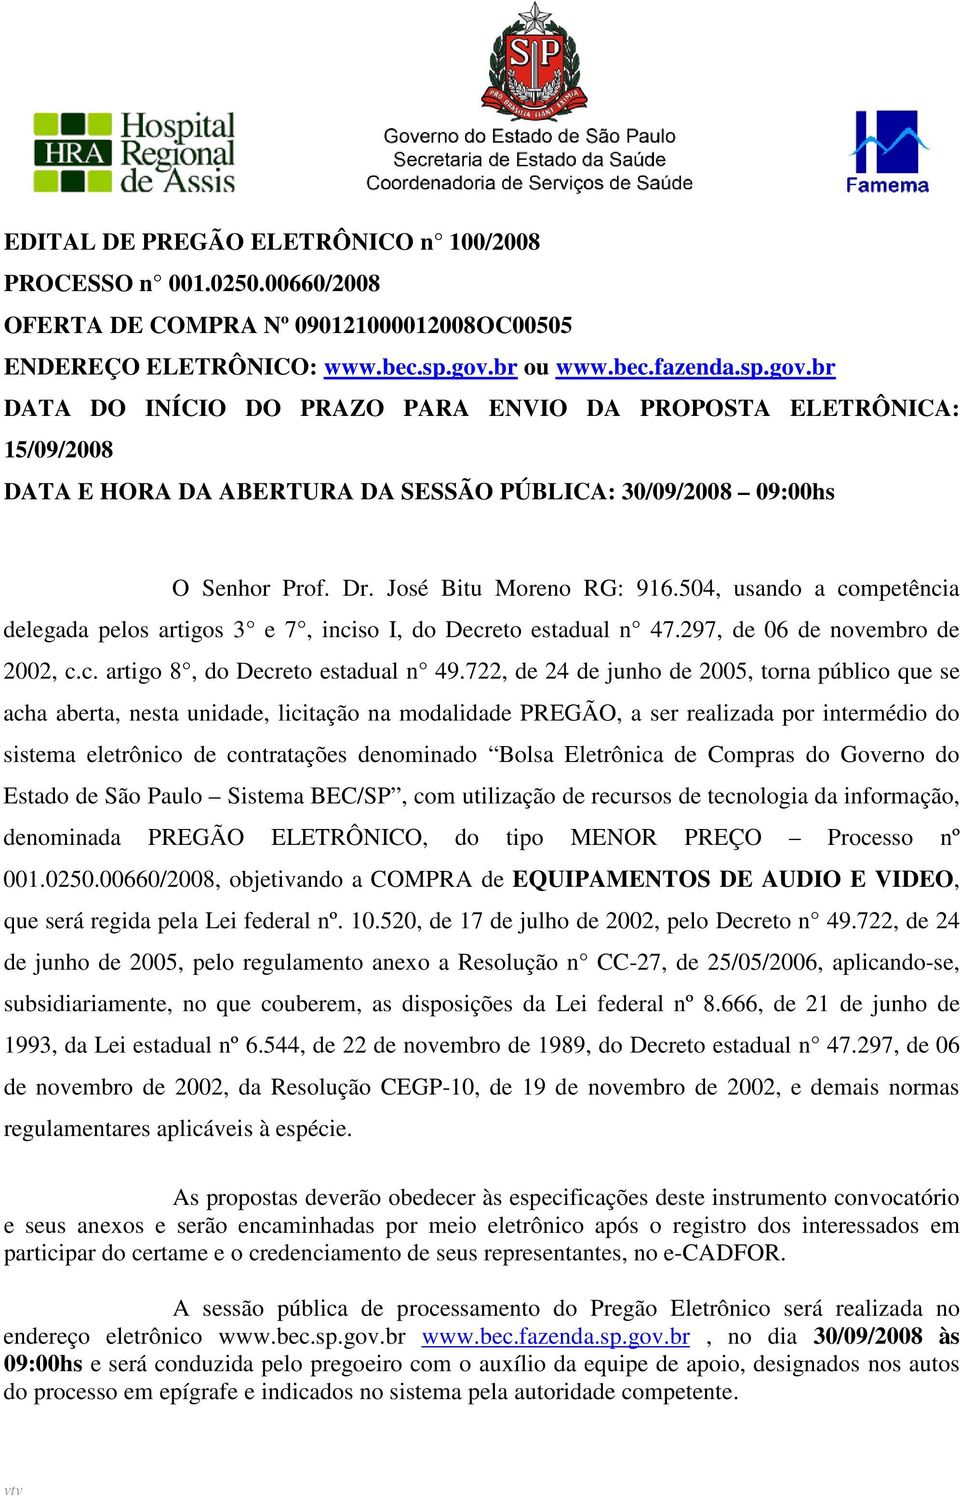 José Bitu Moreno RG: 916.504, usando a competência delegada pelos artigos 3 e 7, inciso I, do Decreto estadual n 47.297, de 06 de novembro de 2002, c.c. artigo 8, do Decreto estadual n 49.